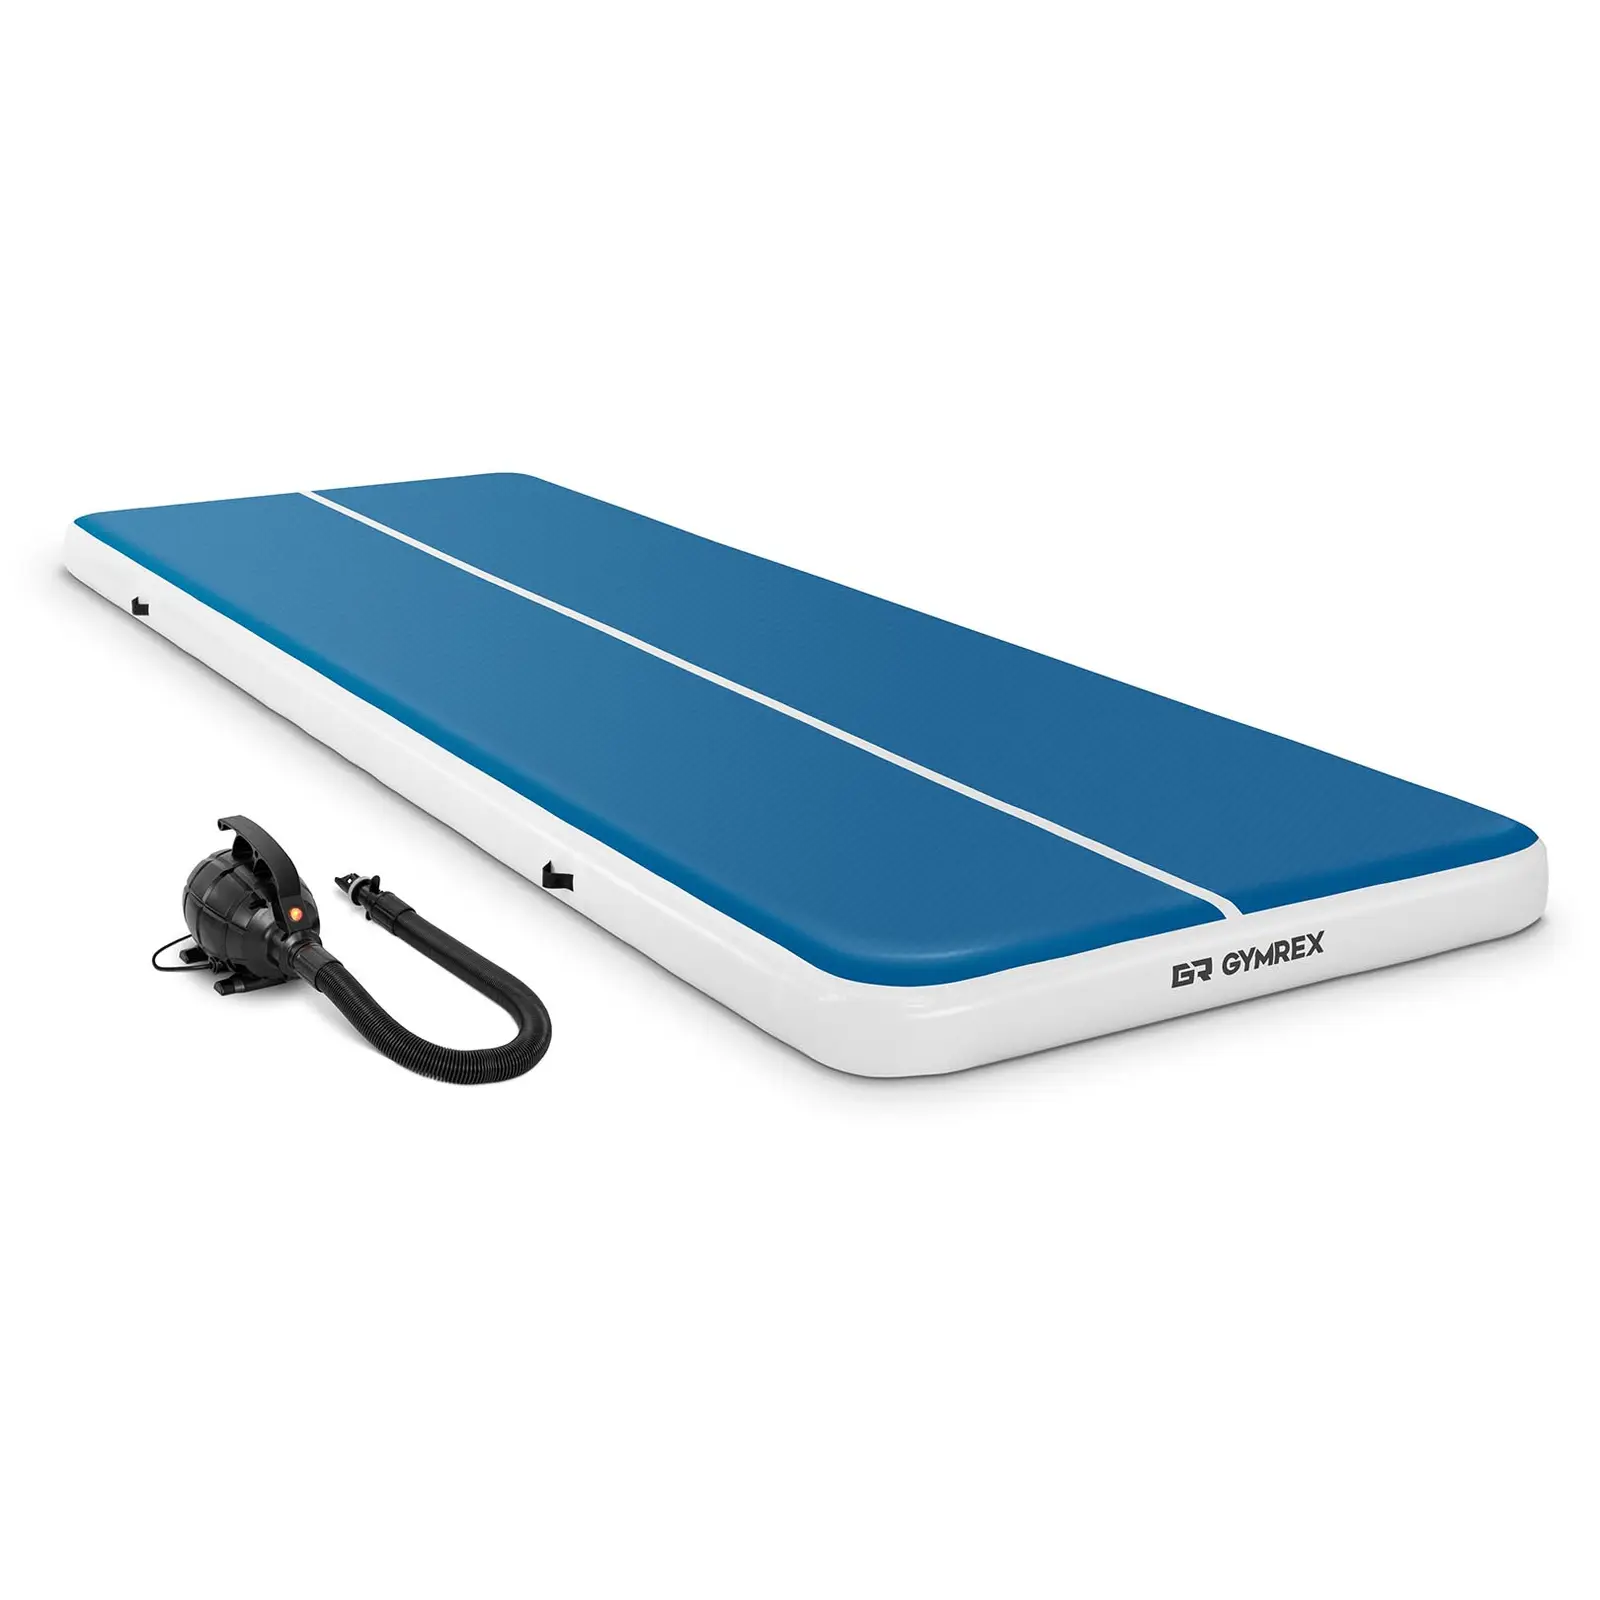 Air track avec gonfleur électrique - 600 x 200 x 20 cm - 400 kg - Bleu/blanc